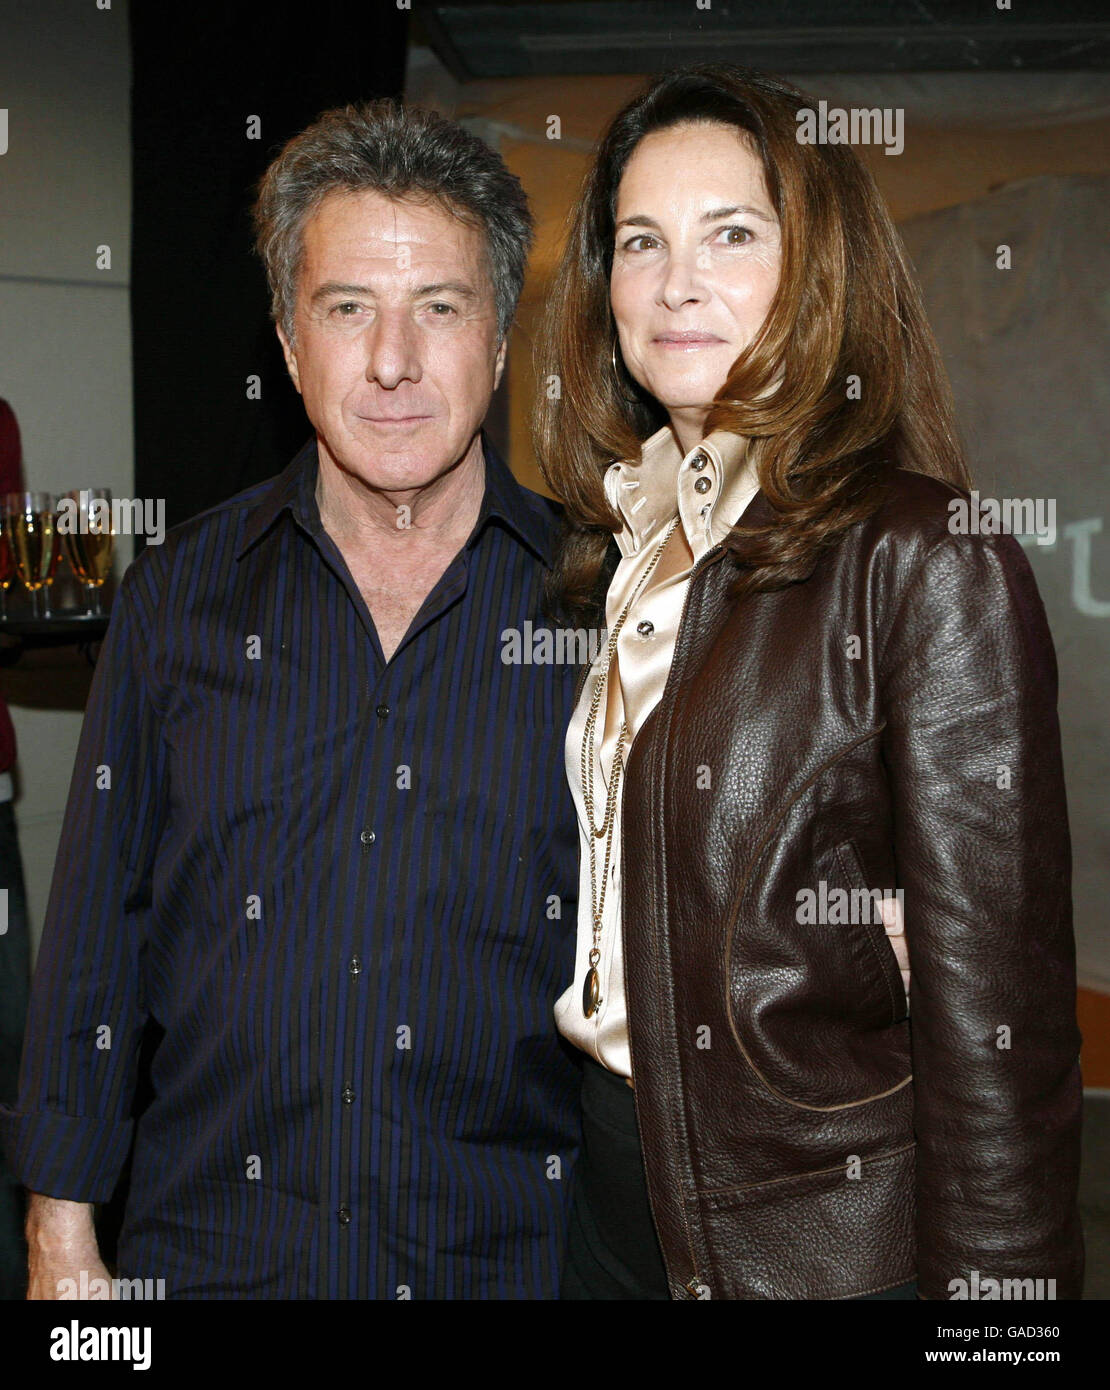 Dustin Hoffman e sua moglie Lisa Gottsegen partecipano al lancio del nuovo NIKEiD Studio presso Nike Town nel centro di Londra. Foto Stock